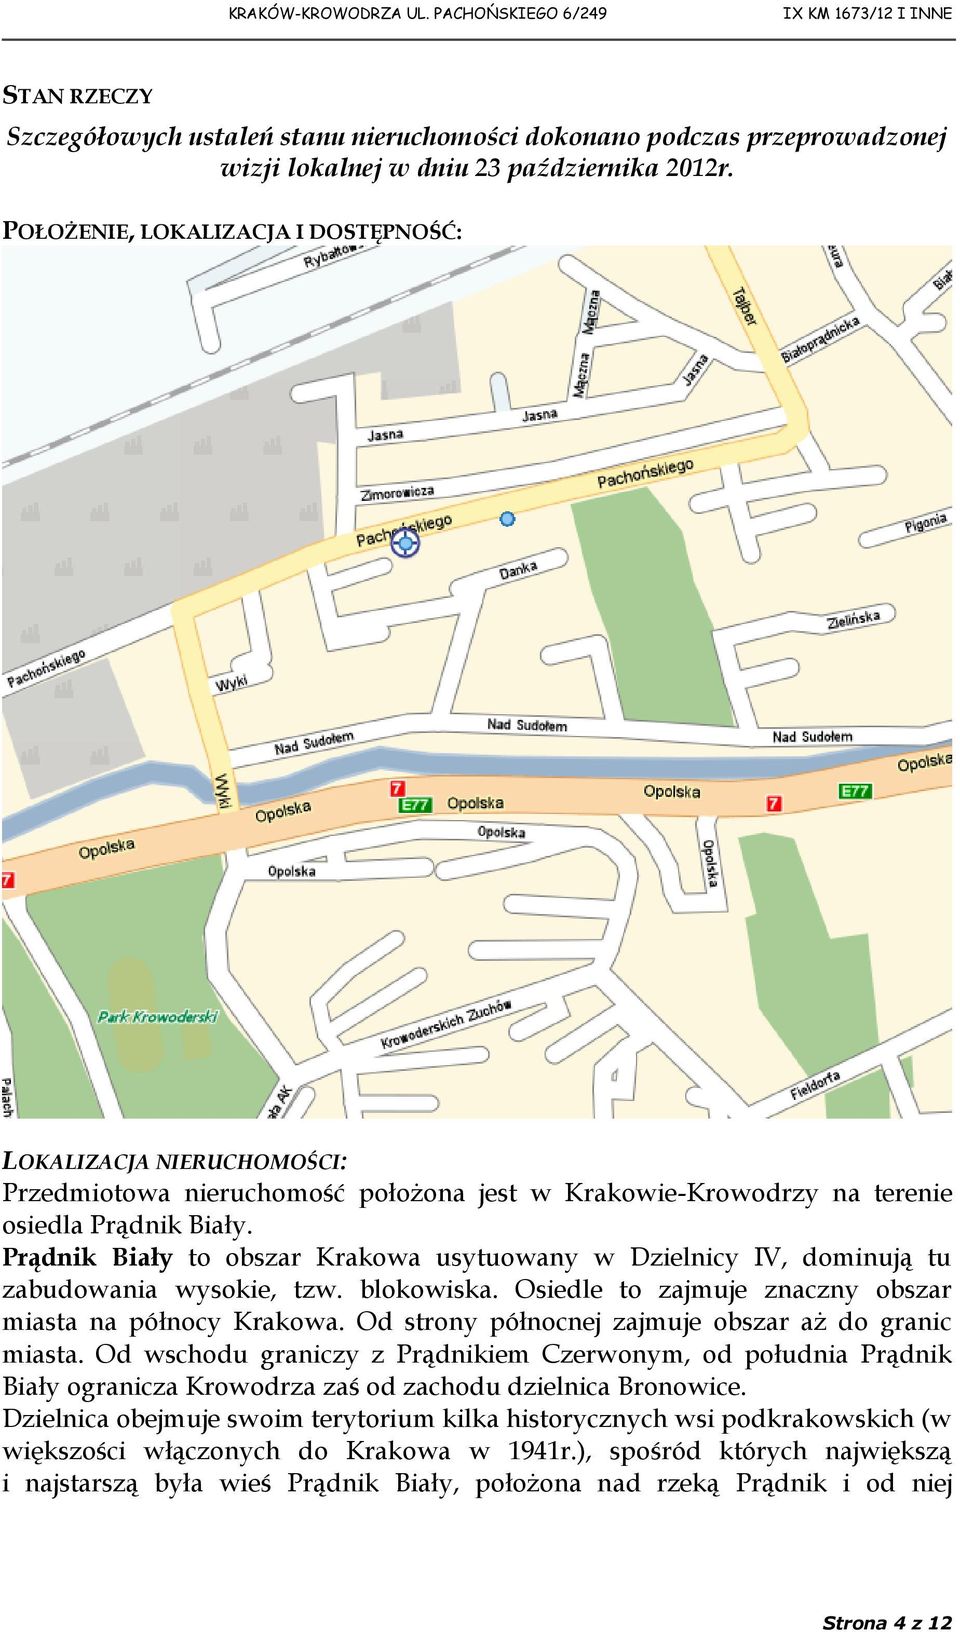 Prądnik Biały to obszar Krakowa usytuowany w Dzielnicy IV, dominują tu zabudowania wysokie, tzw. blokowiska. Osiedle to zajmuje znaczny obszar miasta na północy Krakowa.